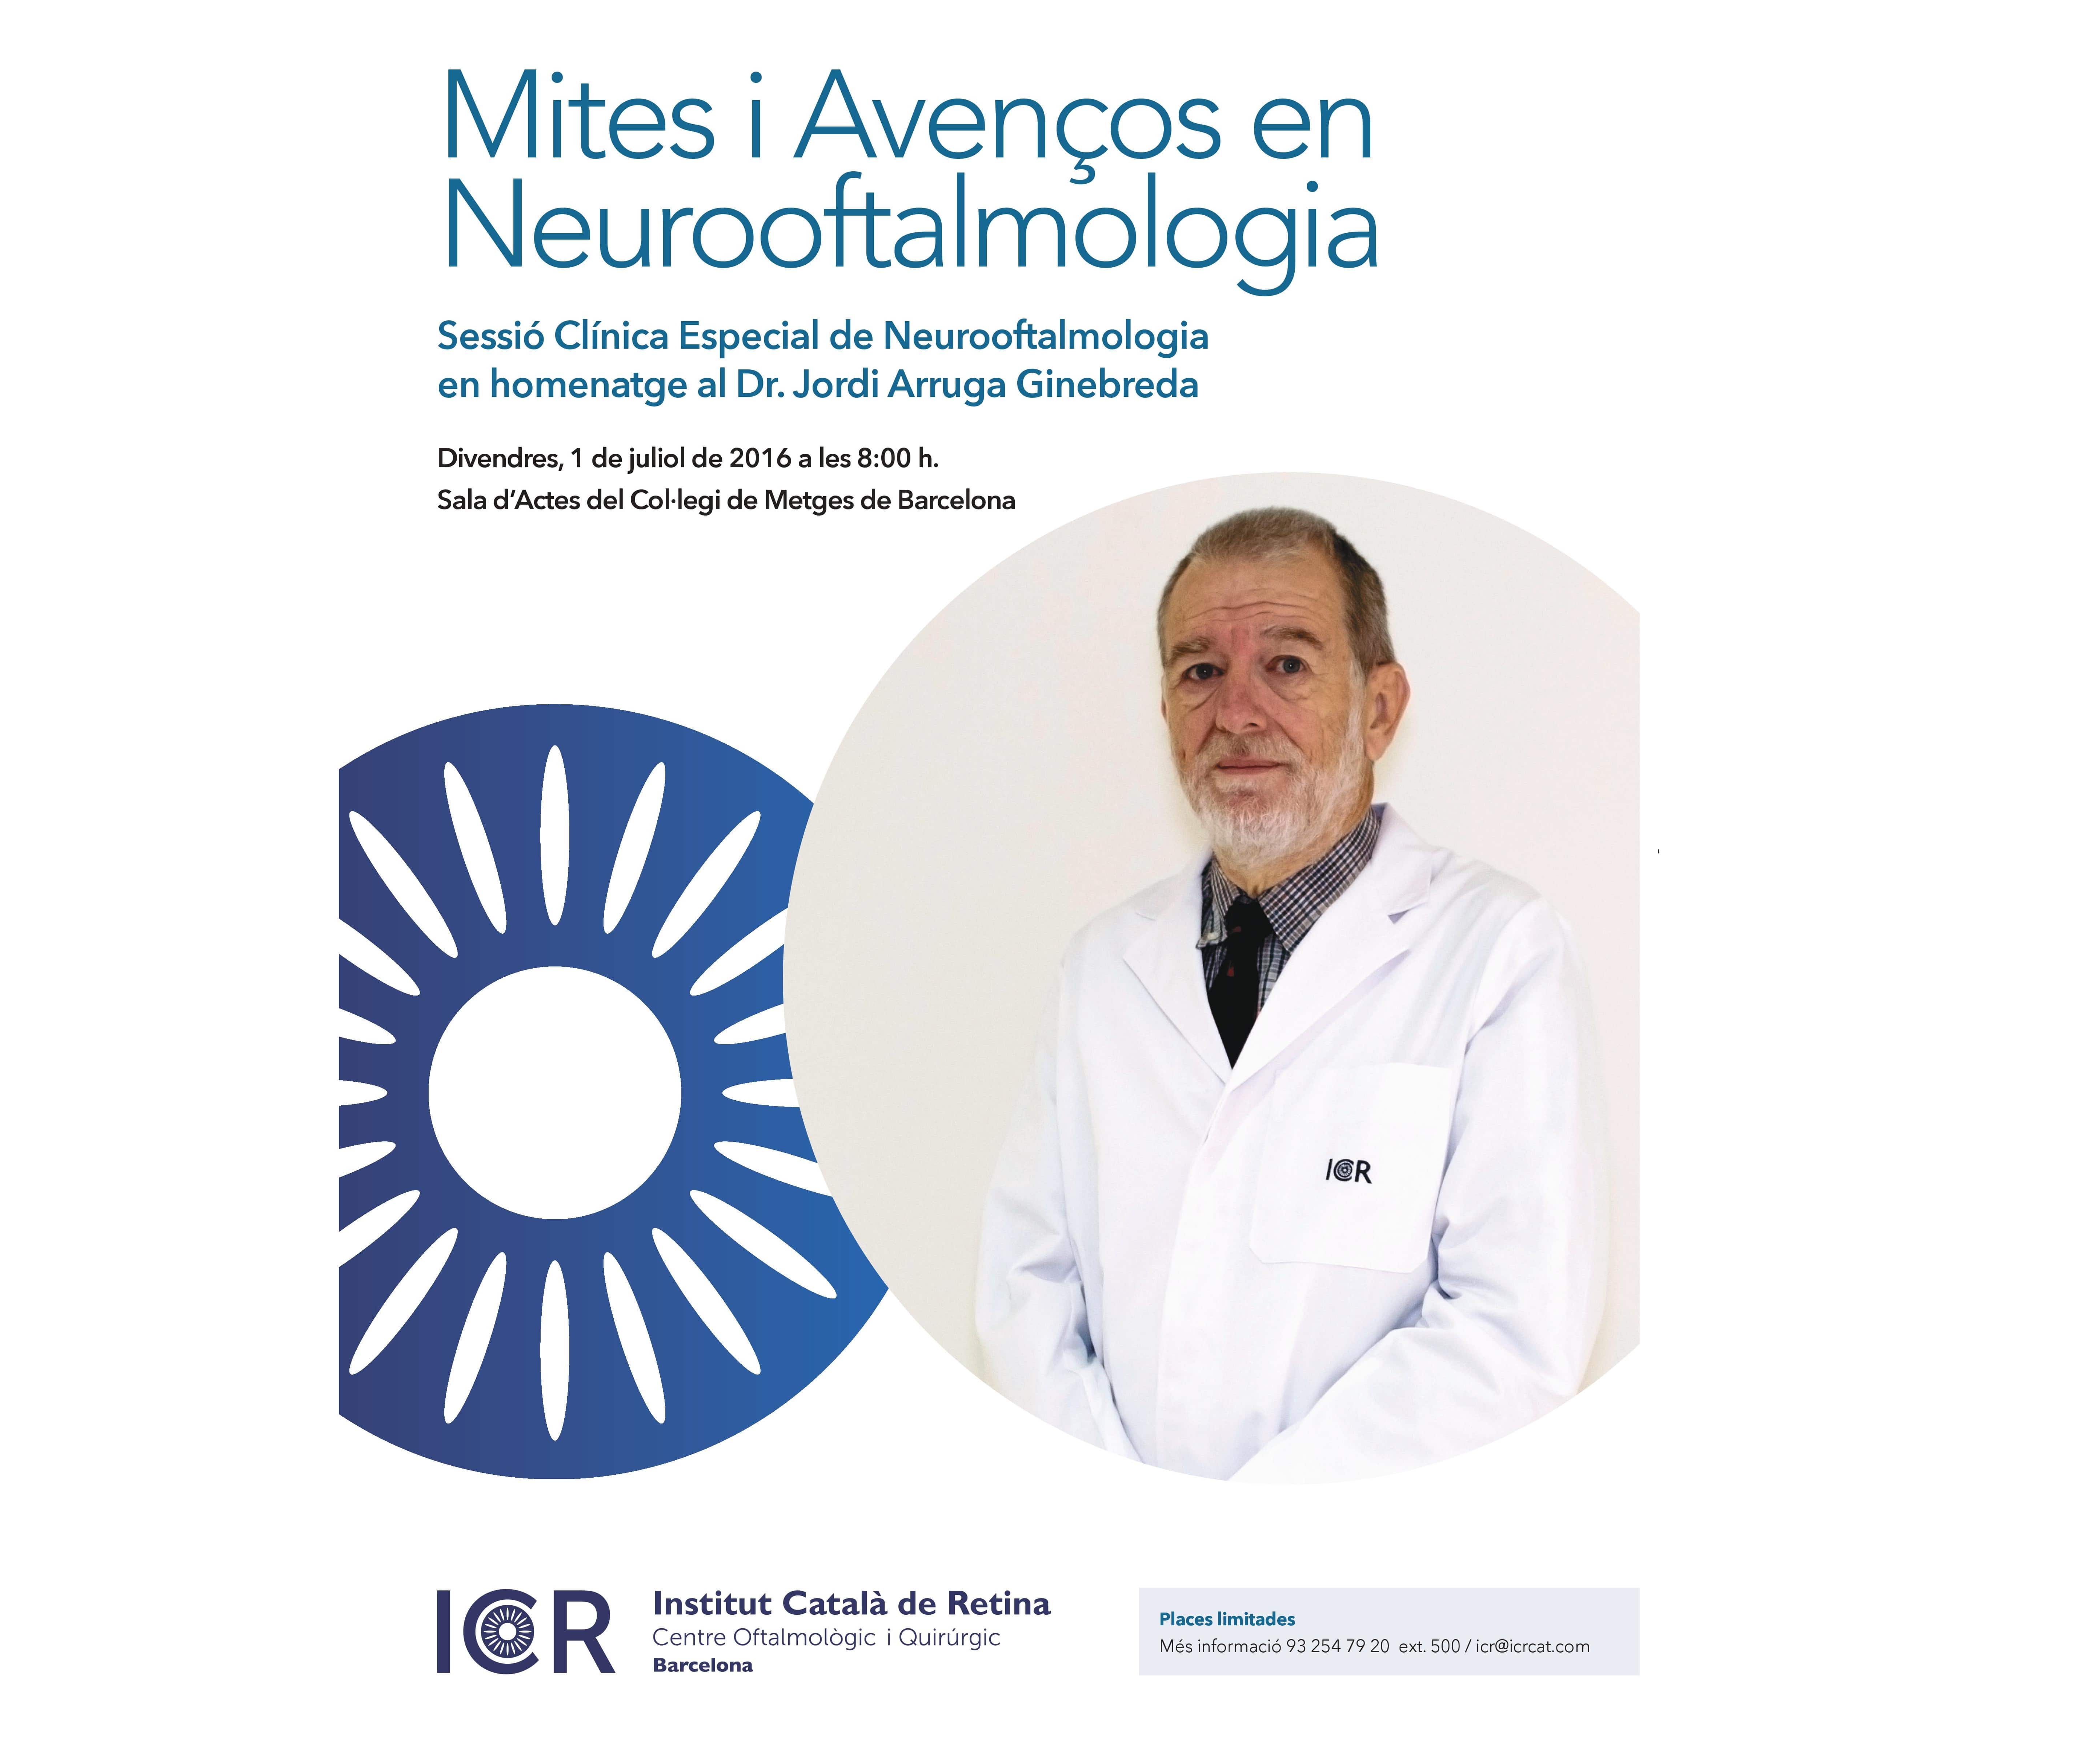 Sesión clínica especial de Neuroftalmología en homenaje al Dr. Jordi Arruga